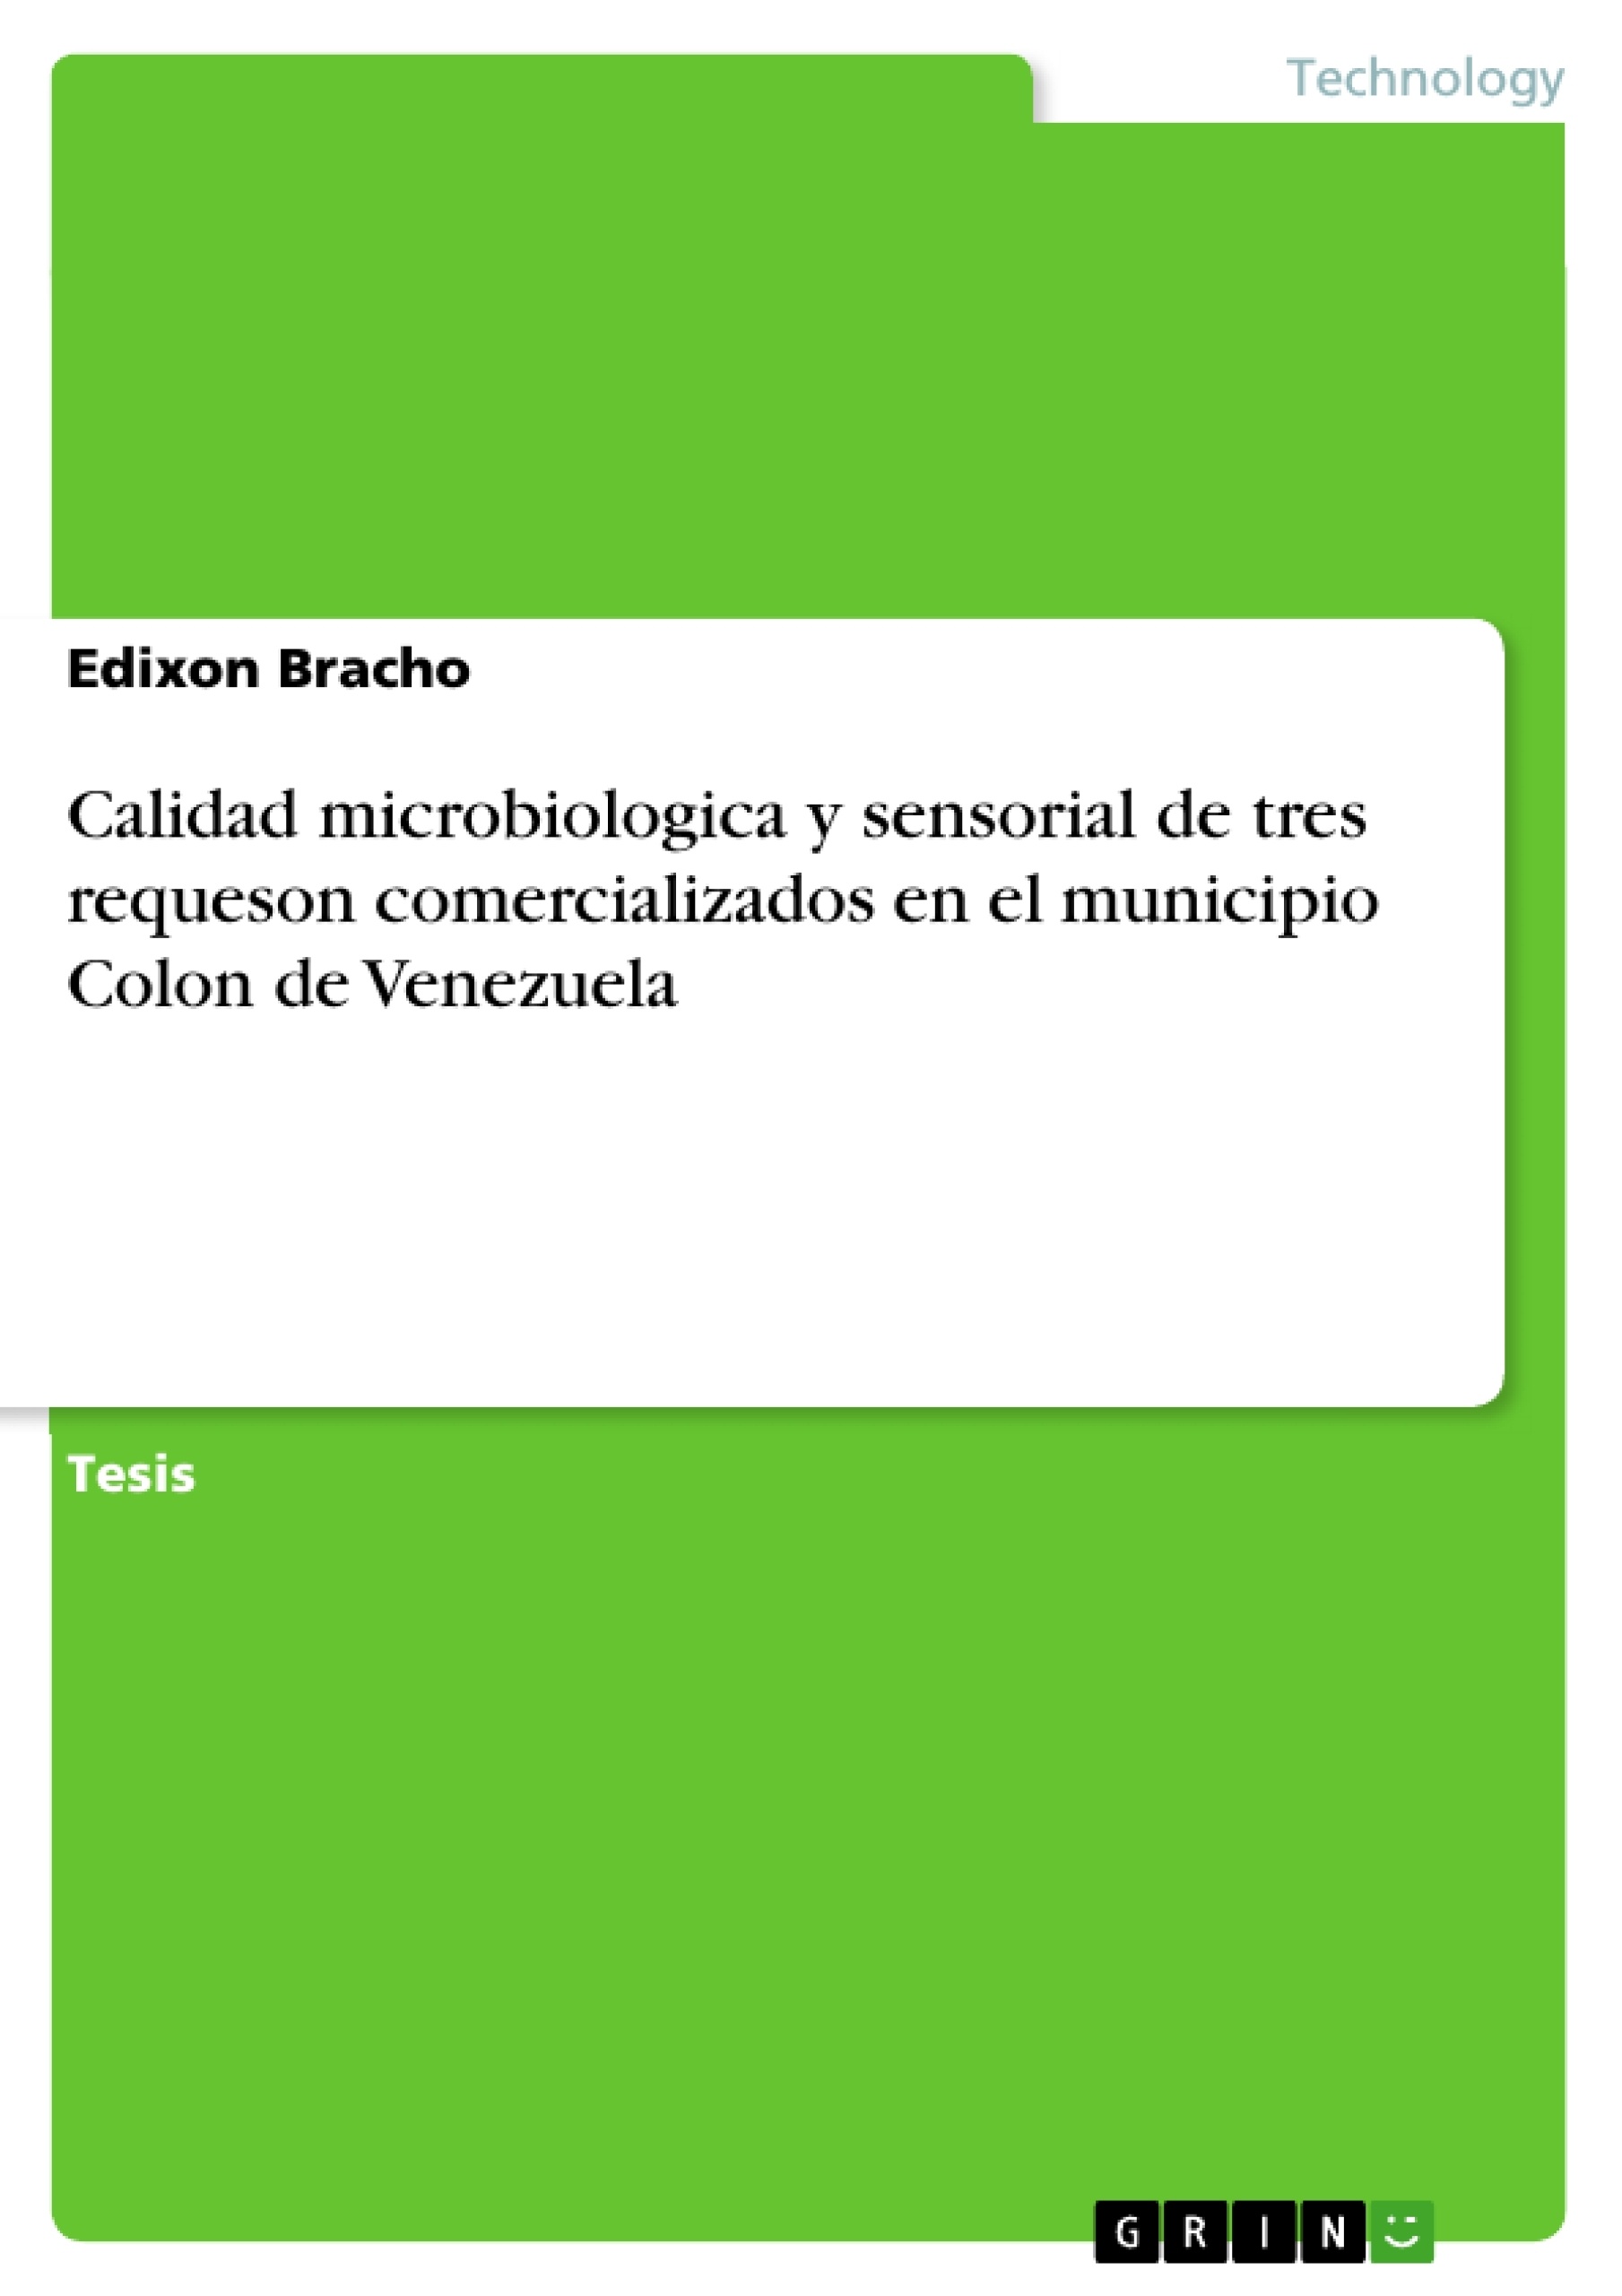 Título: Calidad microbiologica y sensorial de tres requeson comercializados en el municipio Colon de Venezuela